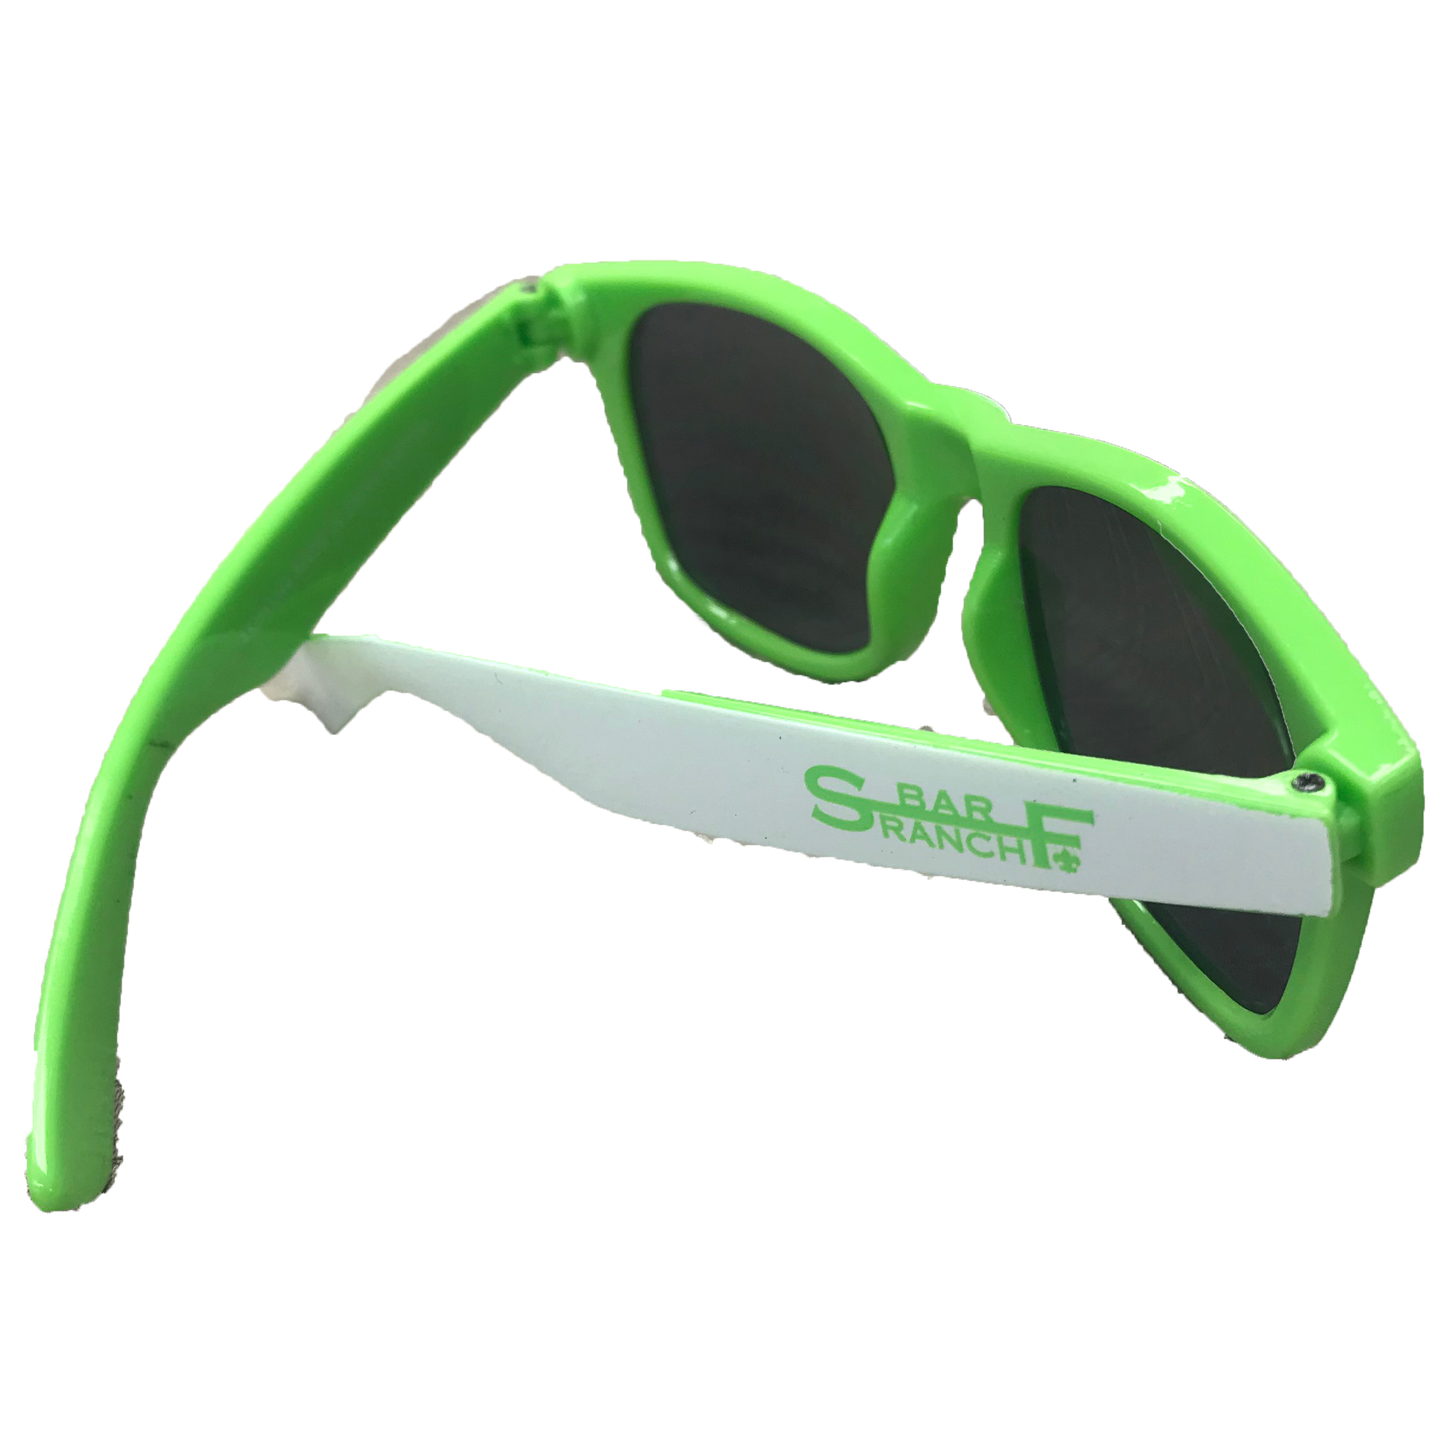 Sunglasses - S bar F